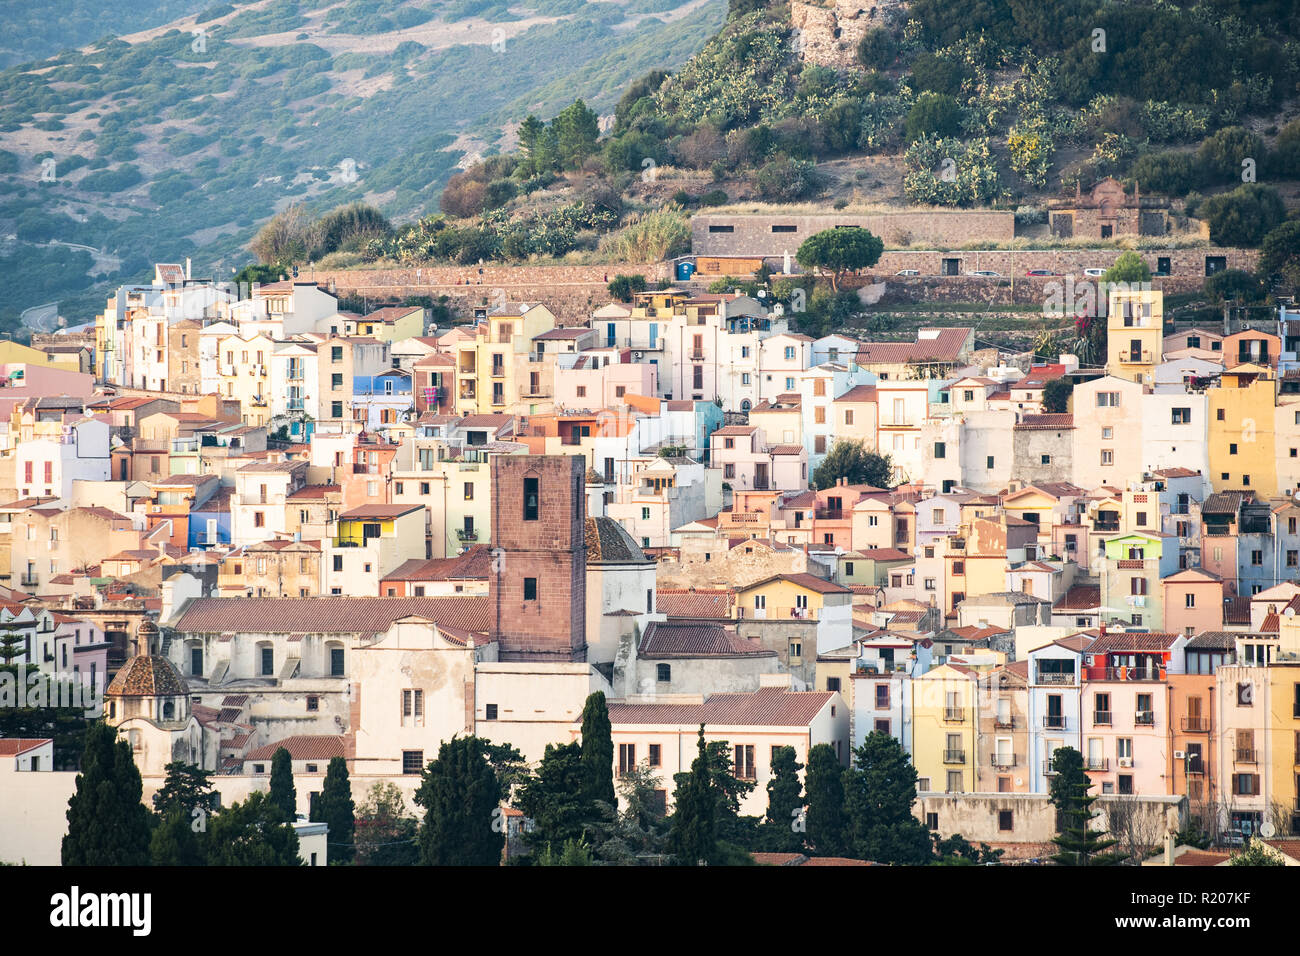 Il bellissimo borgo di Bosa con case colorate e un castello medievale sulla cima della collina. Bosa è situata nel nord-ovest della Sardegna, Italia. Foto Stock